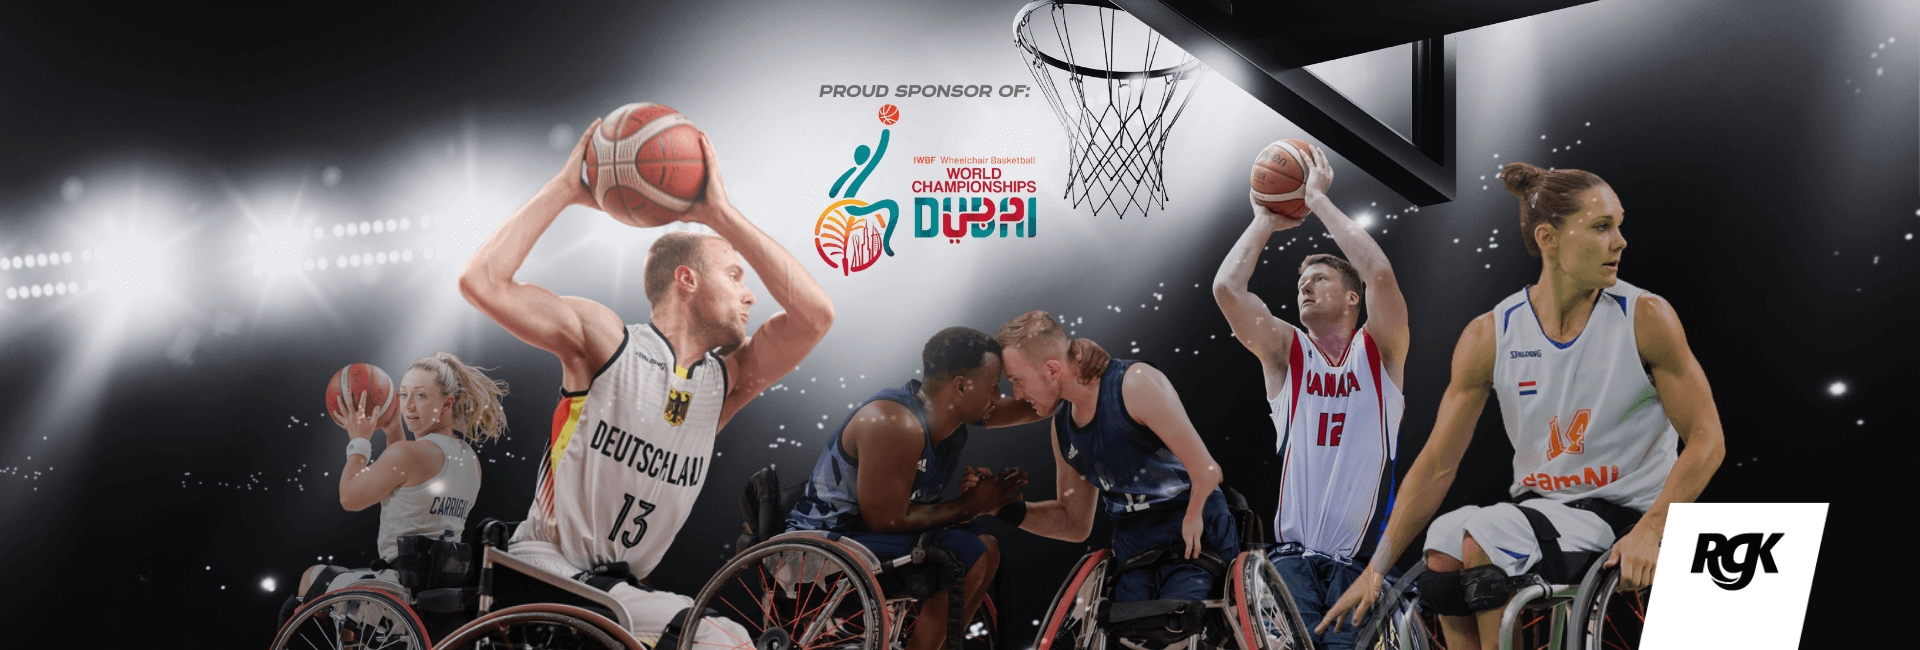 RGK sponzoruje mistrovství světa v basketbalu vozíčkářů v Dubaji